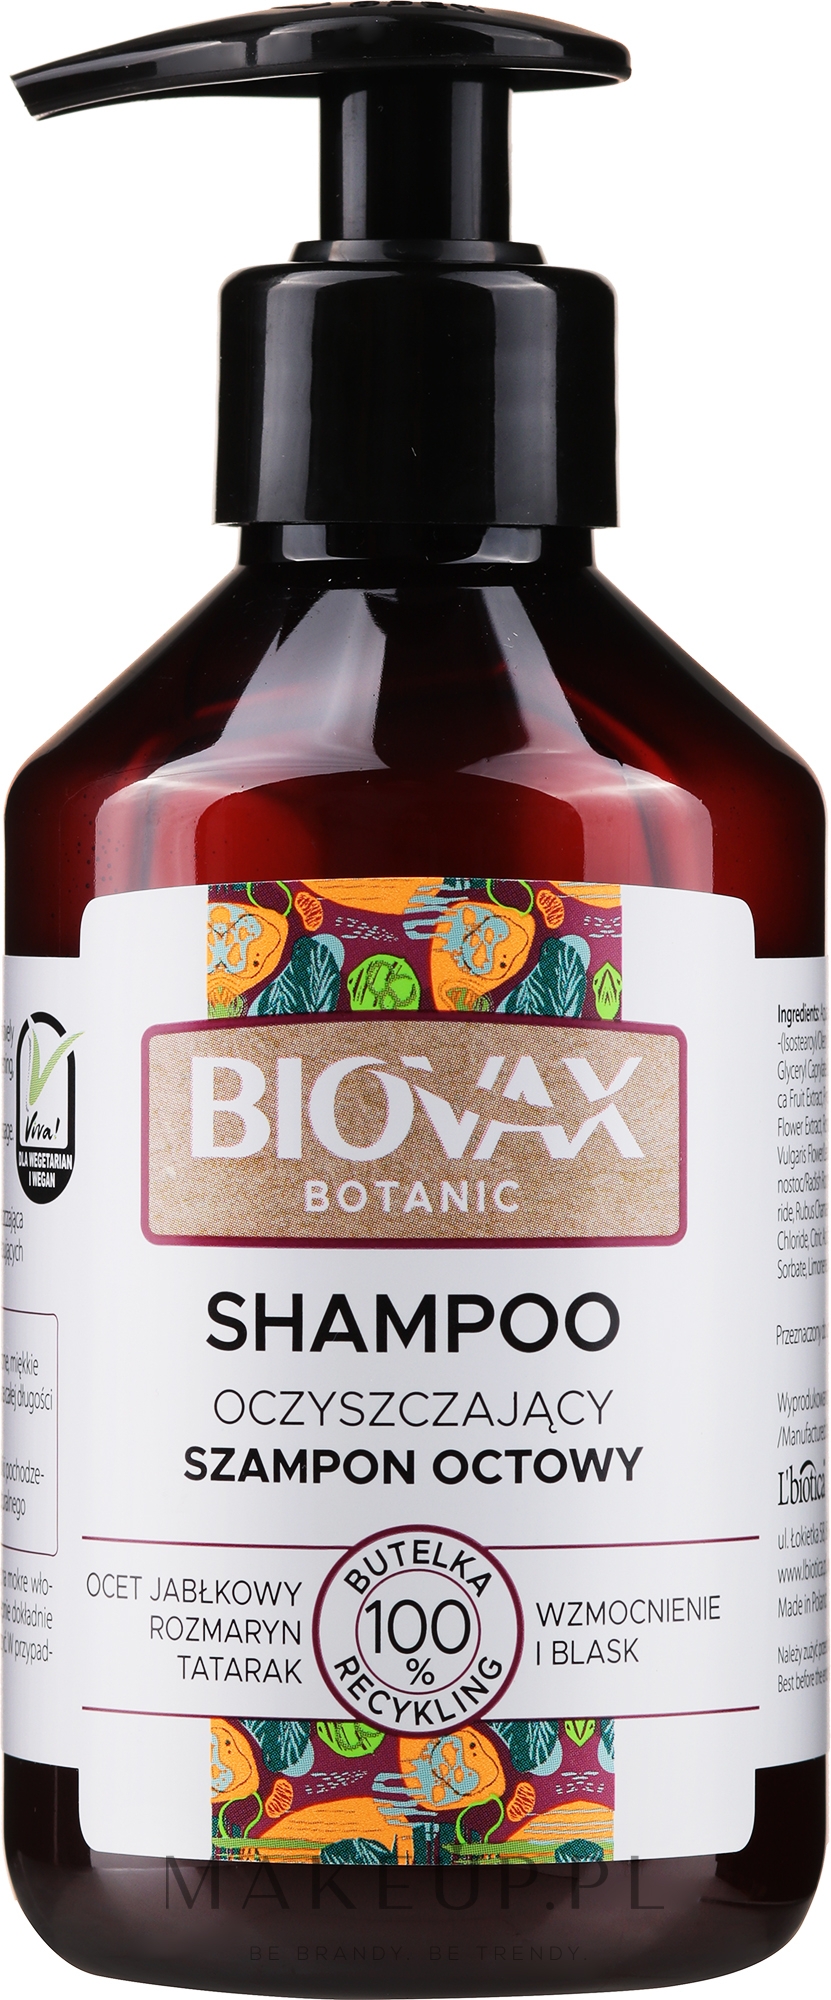 biovax szampon o intensywnie regenerujacy n wizaz